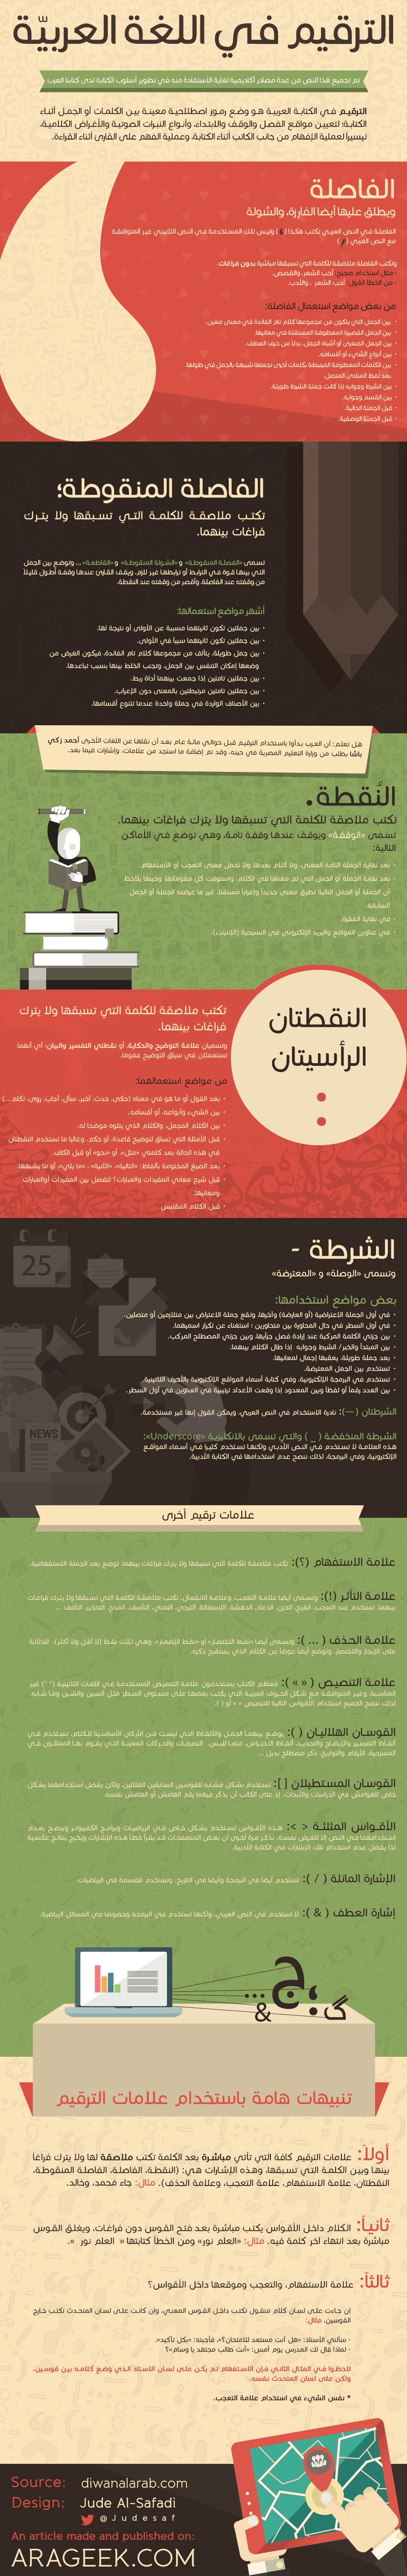 علامات الترقيم في اللغة العربية – انفوجرافيك